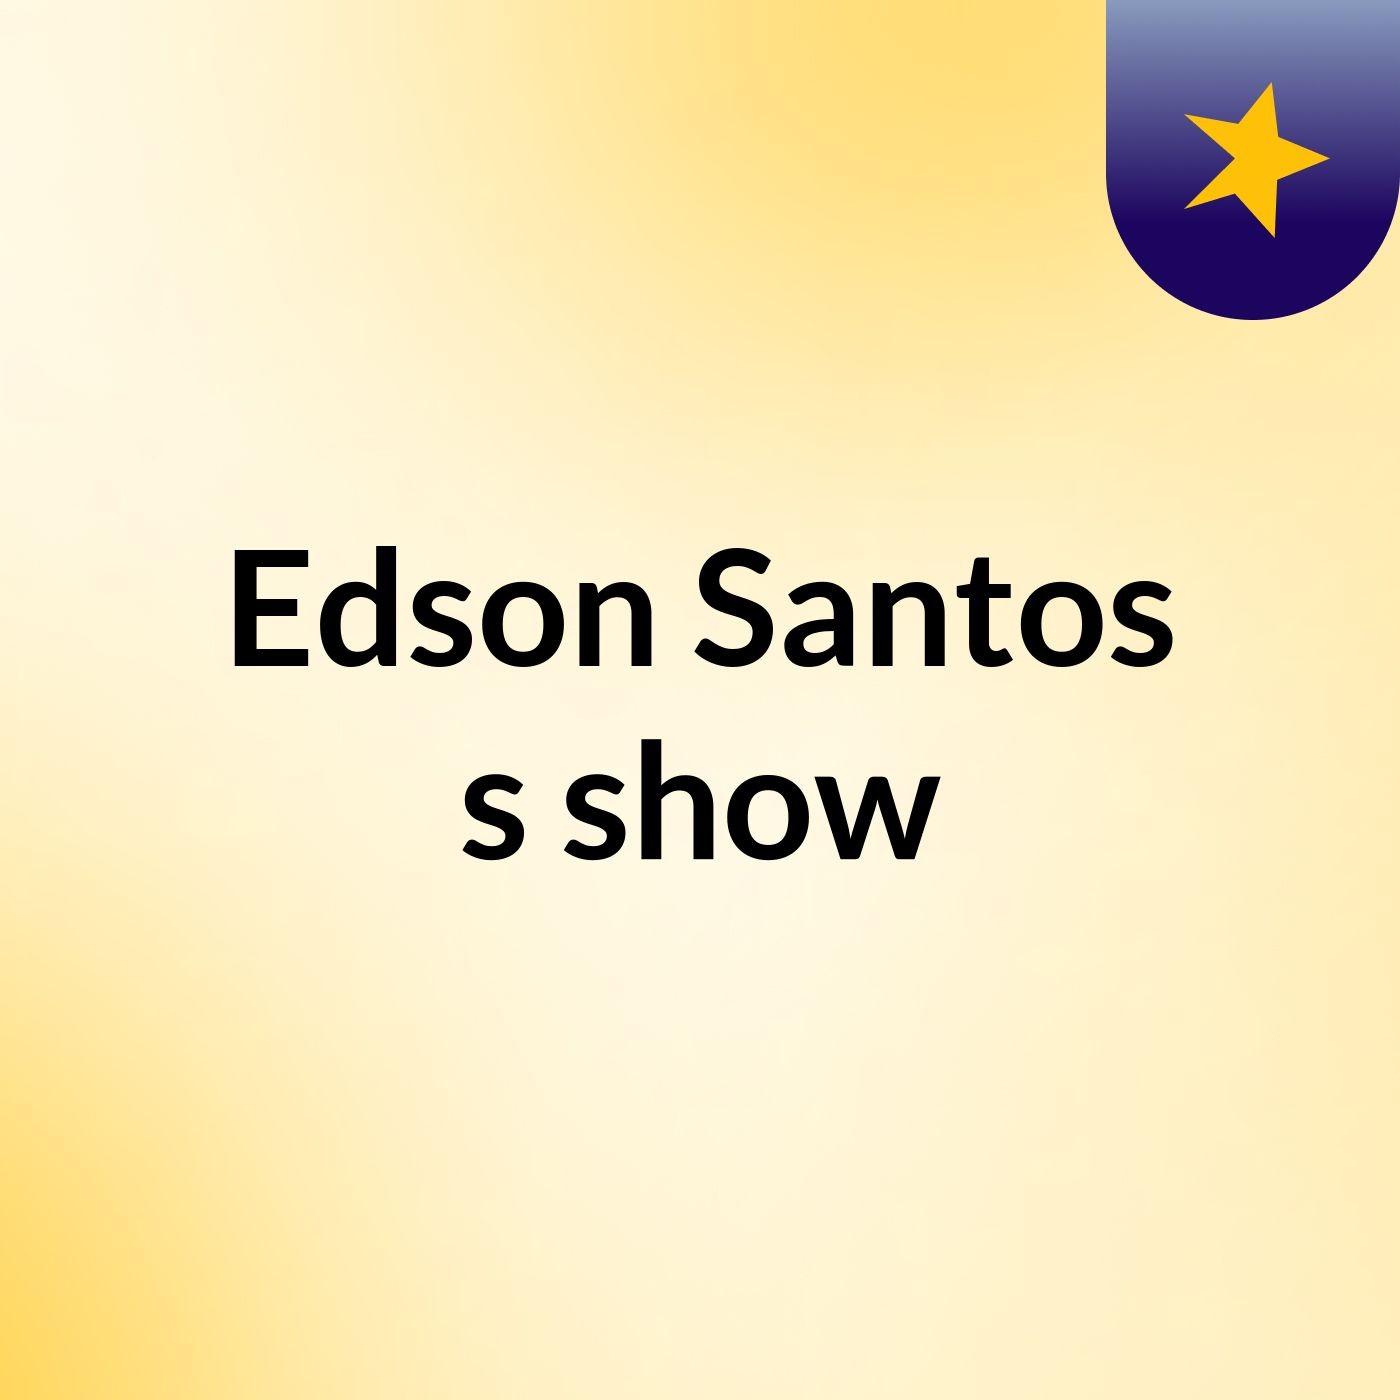 Edson Santos's show